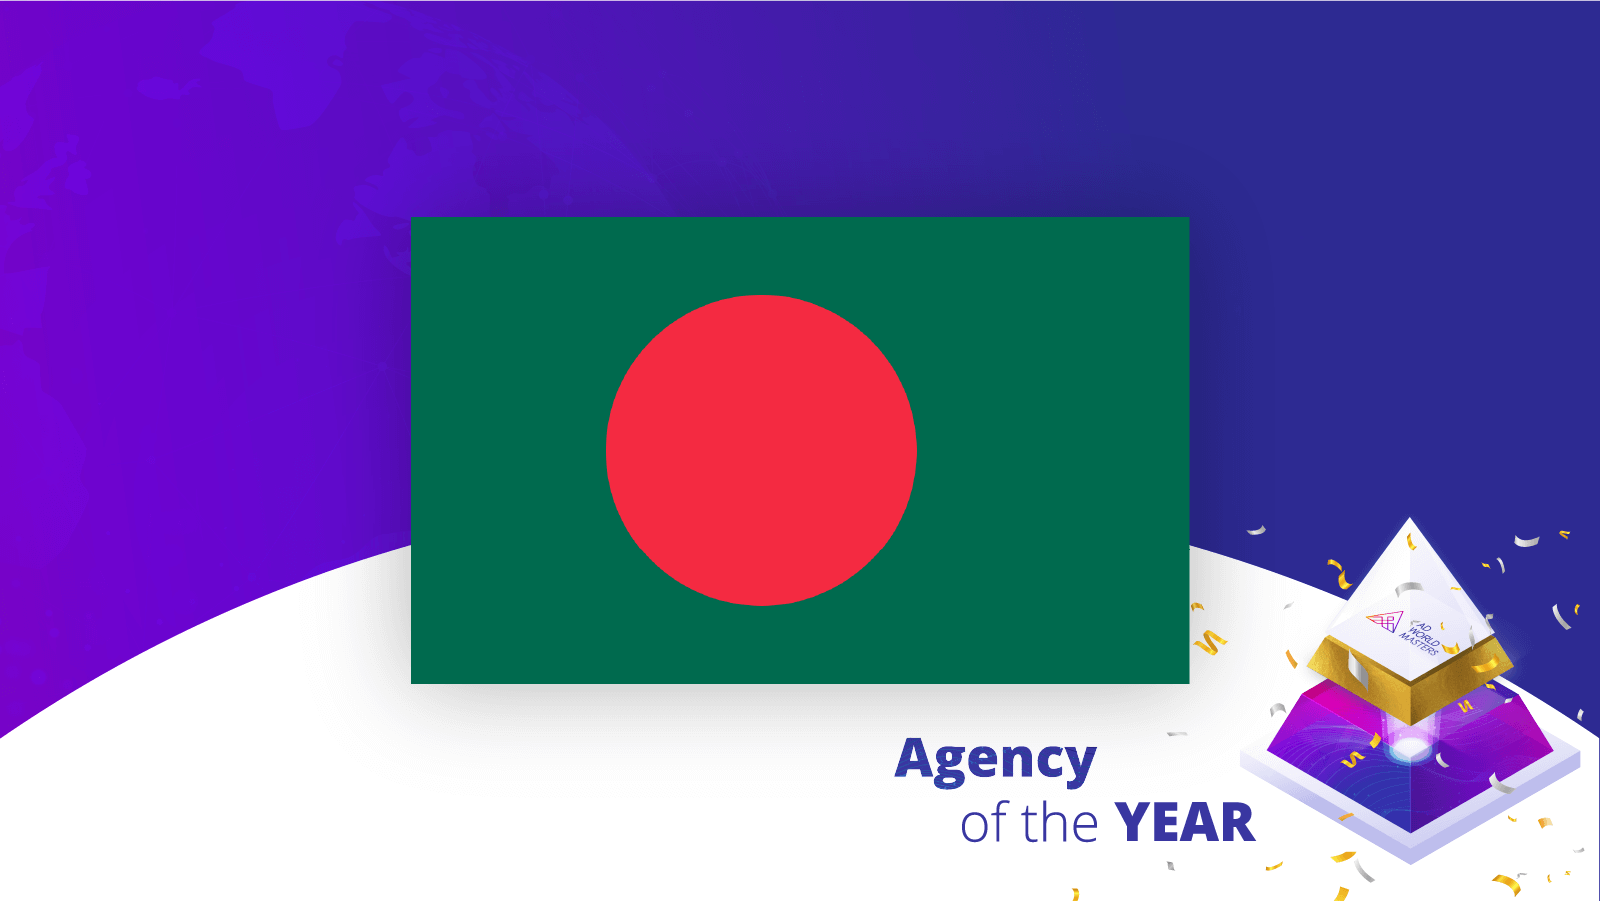 Agencies of the Year Bangladesh